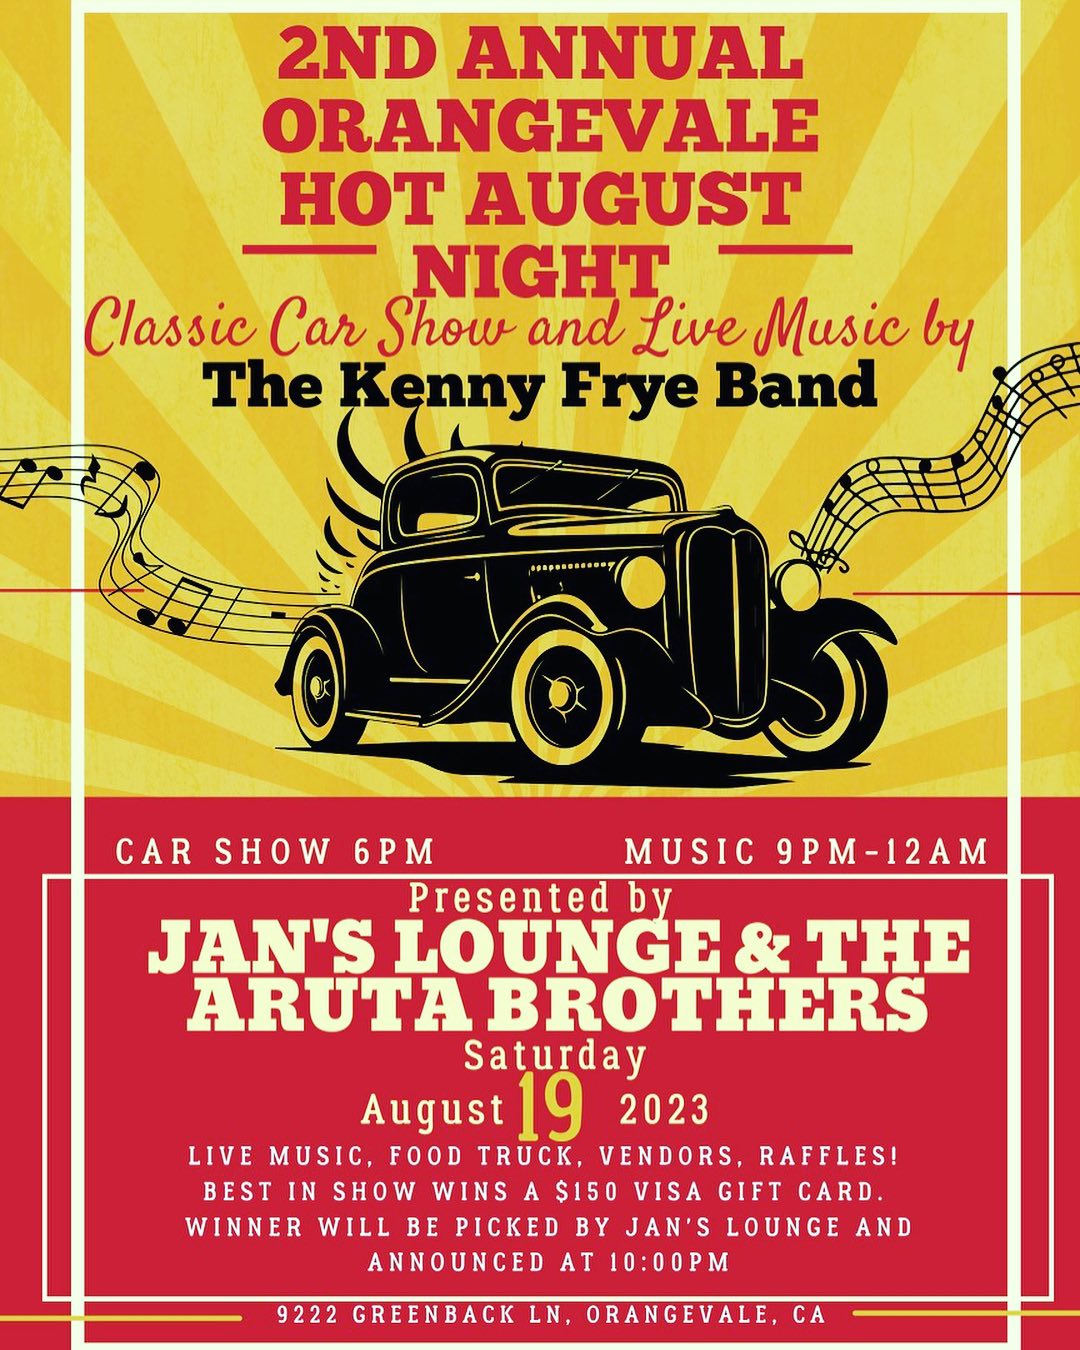 Orangevale Hot August Night Car Show